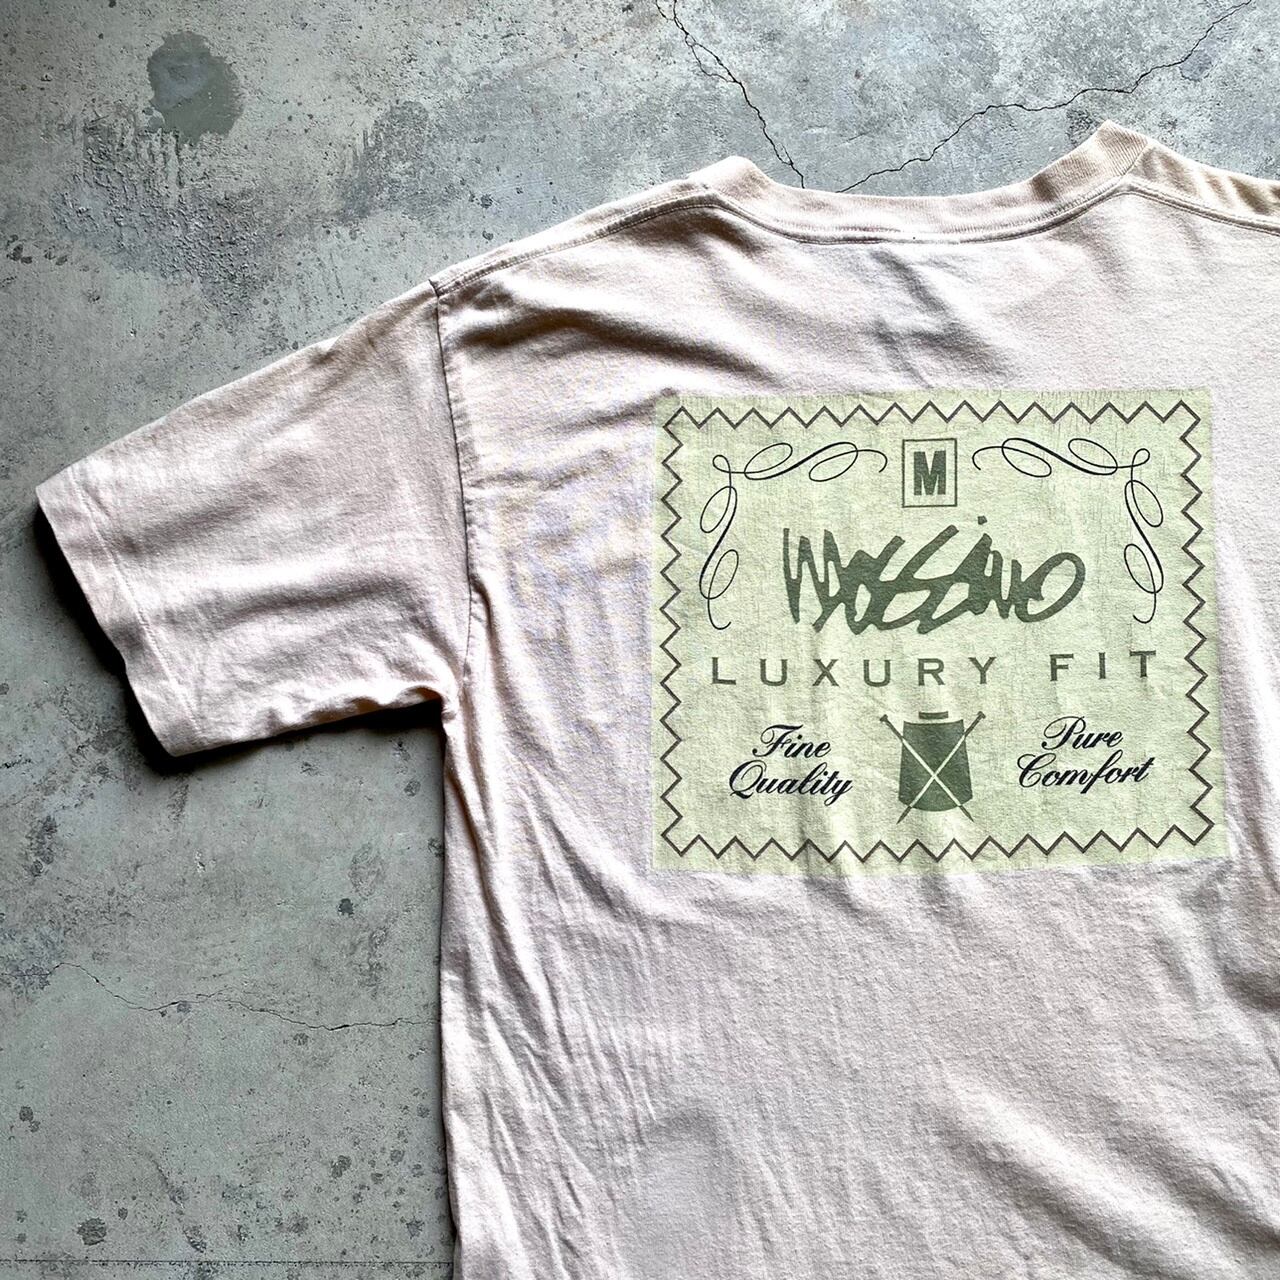 Mossimo ビンテージ グラフィック Tシャツ 90s Mサイズ USA製